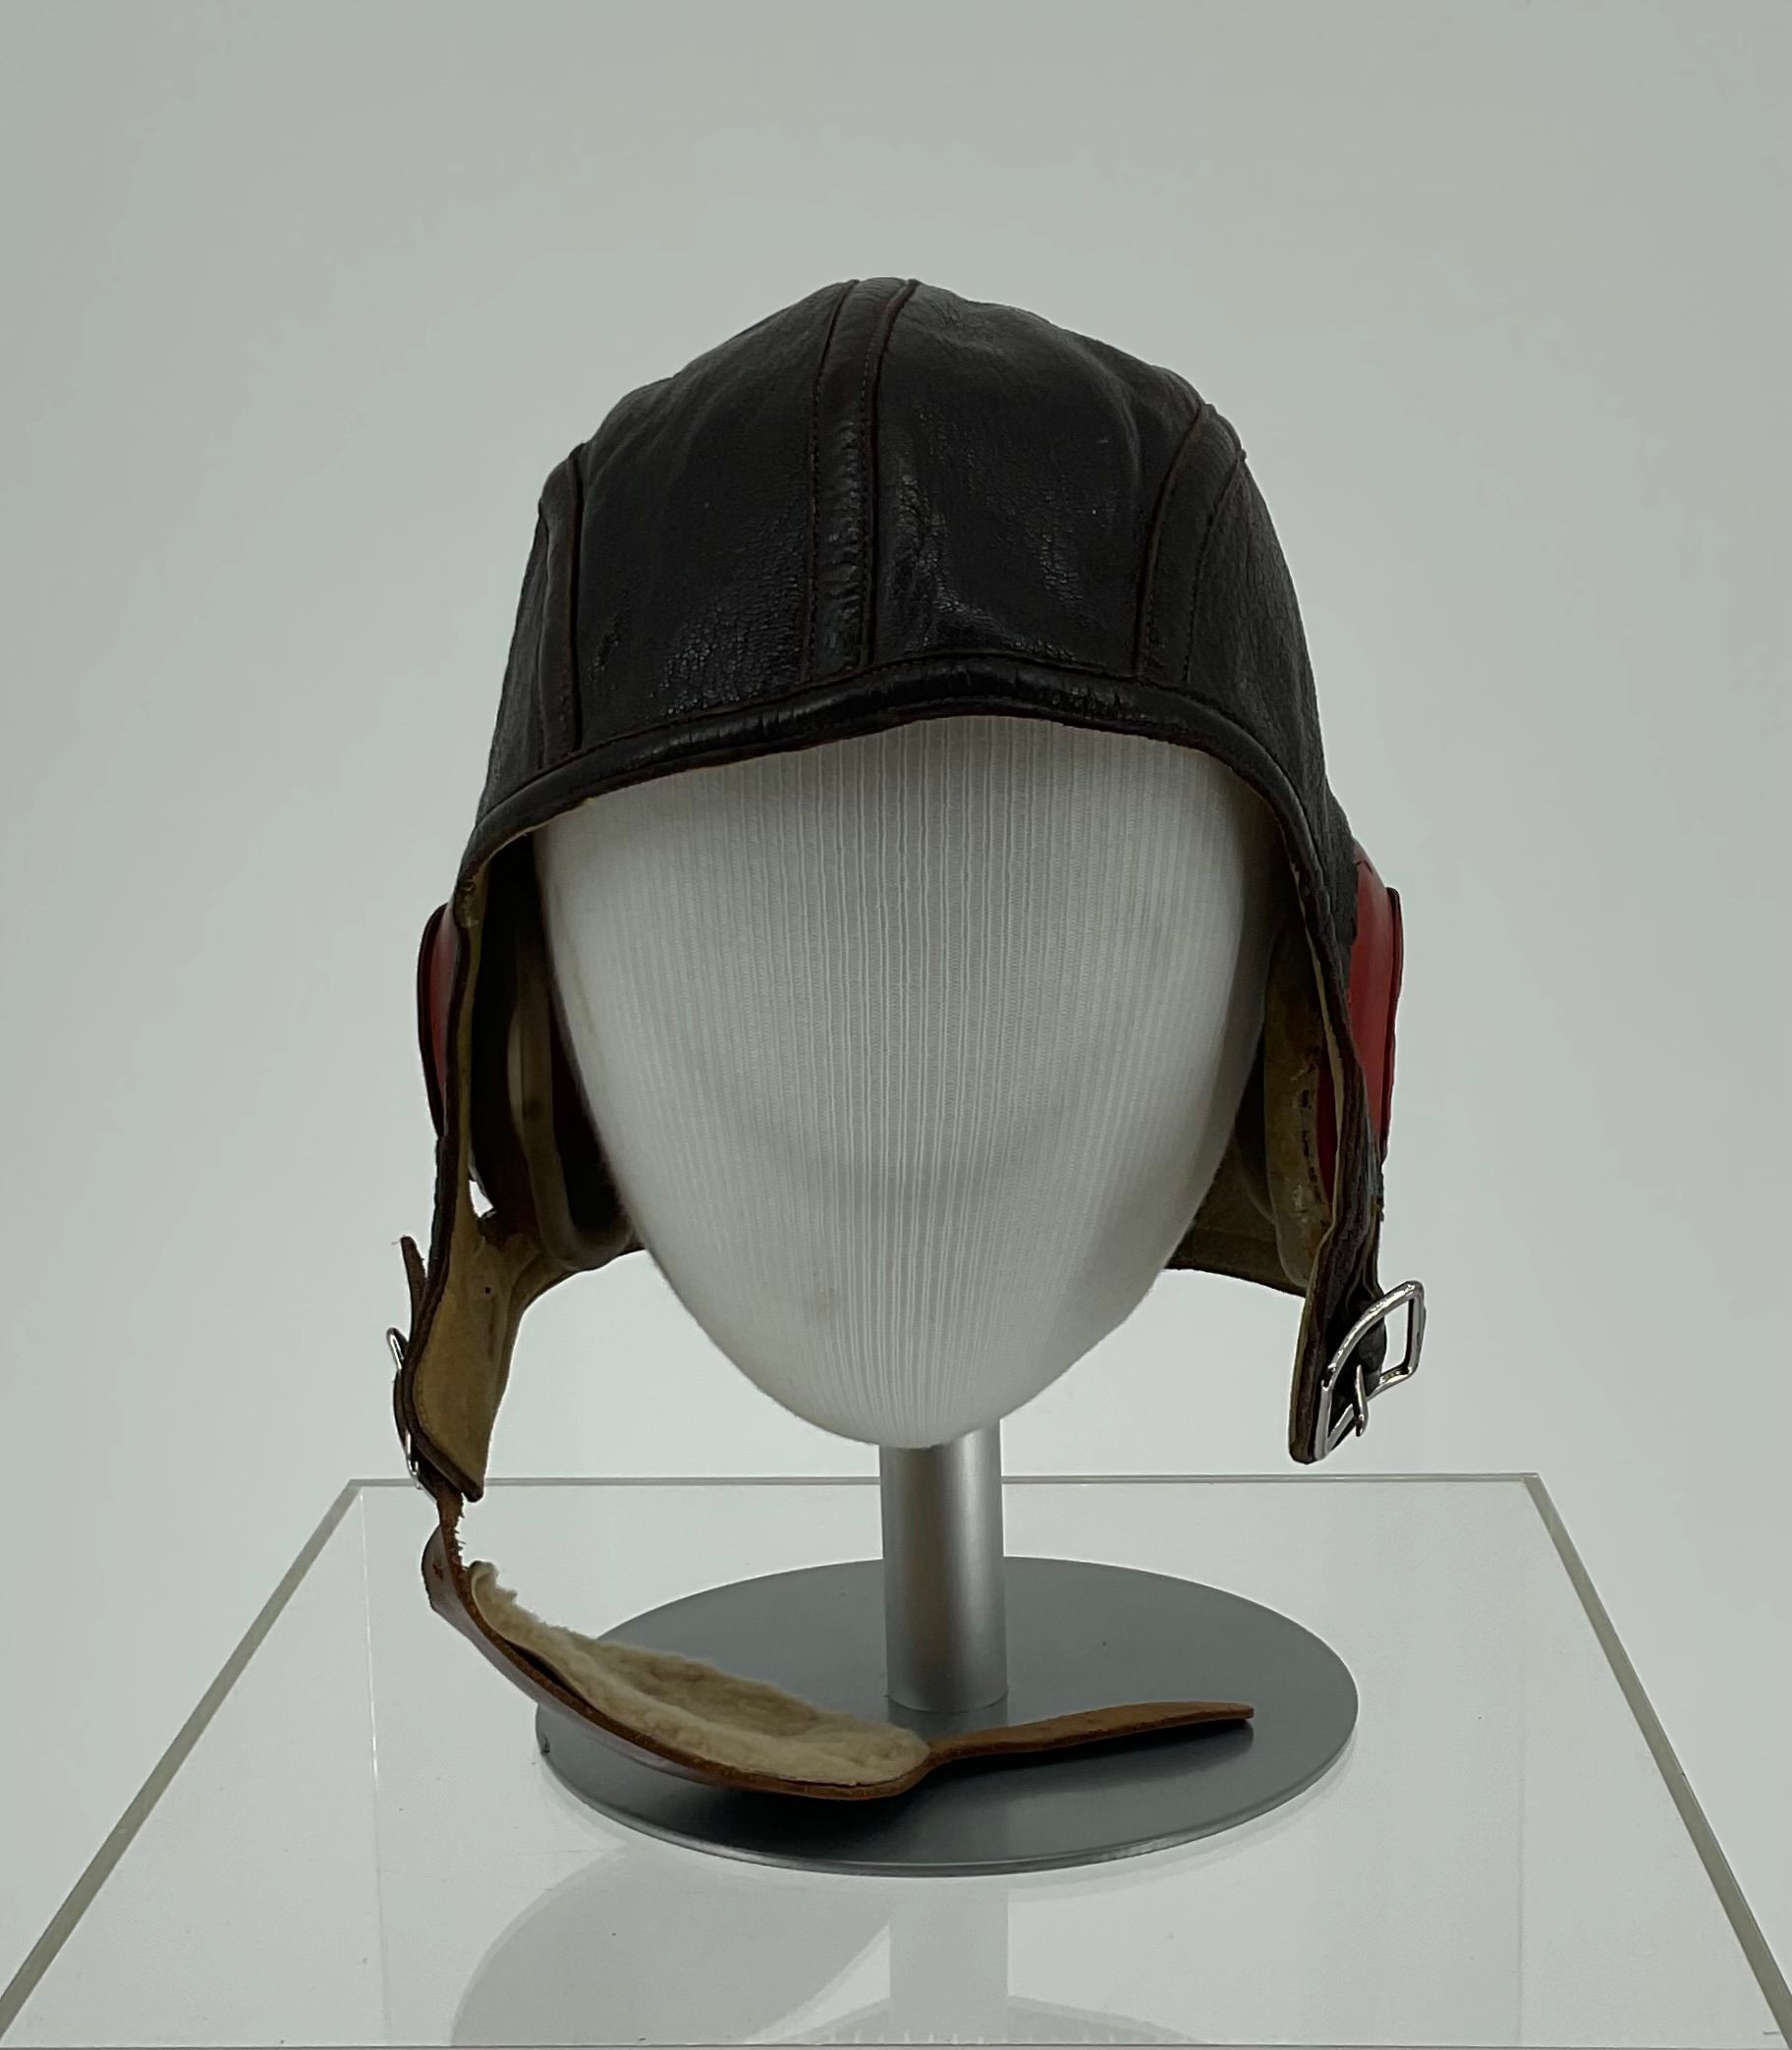 Primary Image of US Naval Aviator Leather Flight Helmet